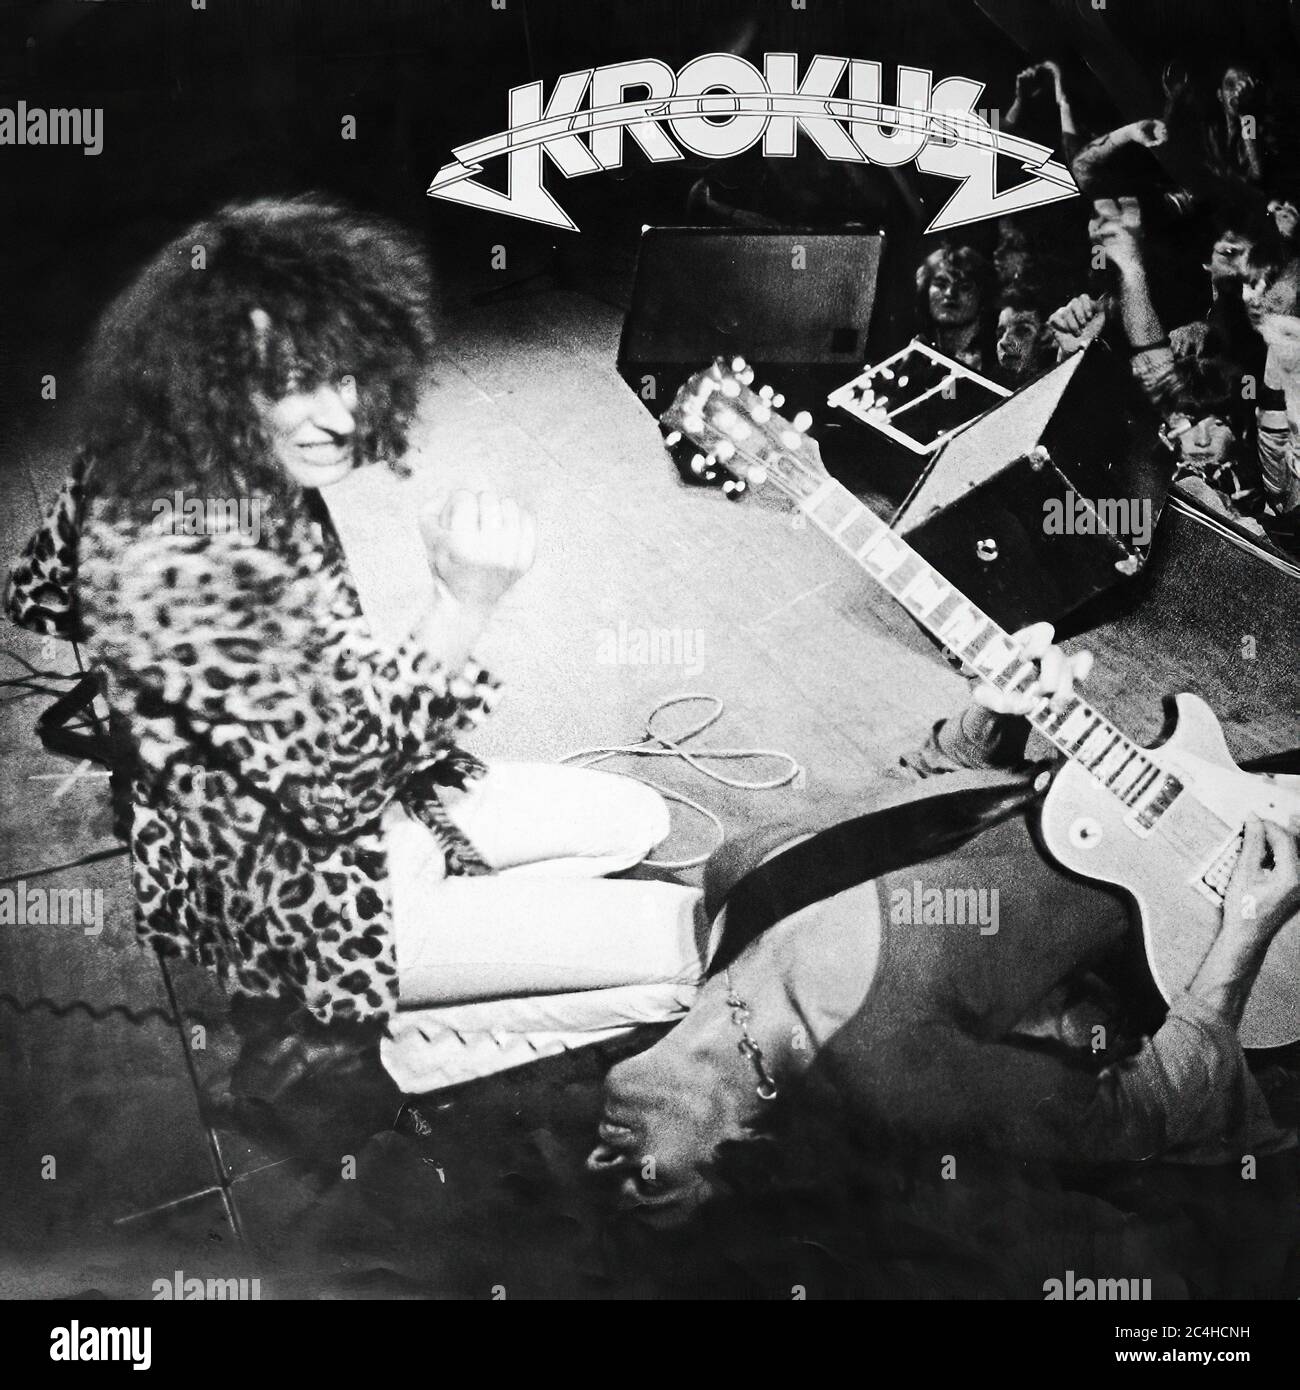 Krokus Metal Rendez-Vous 12'' Vinyl Lp - 01 Vintage Cover Stock Photo -  Alamy